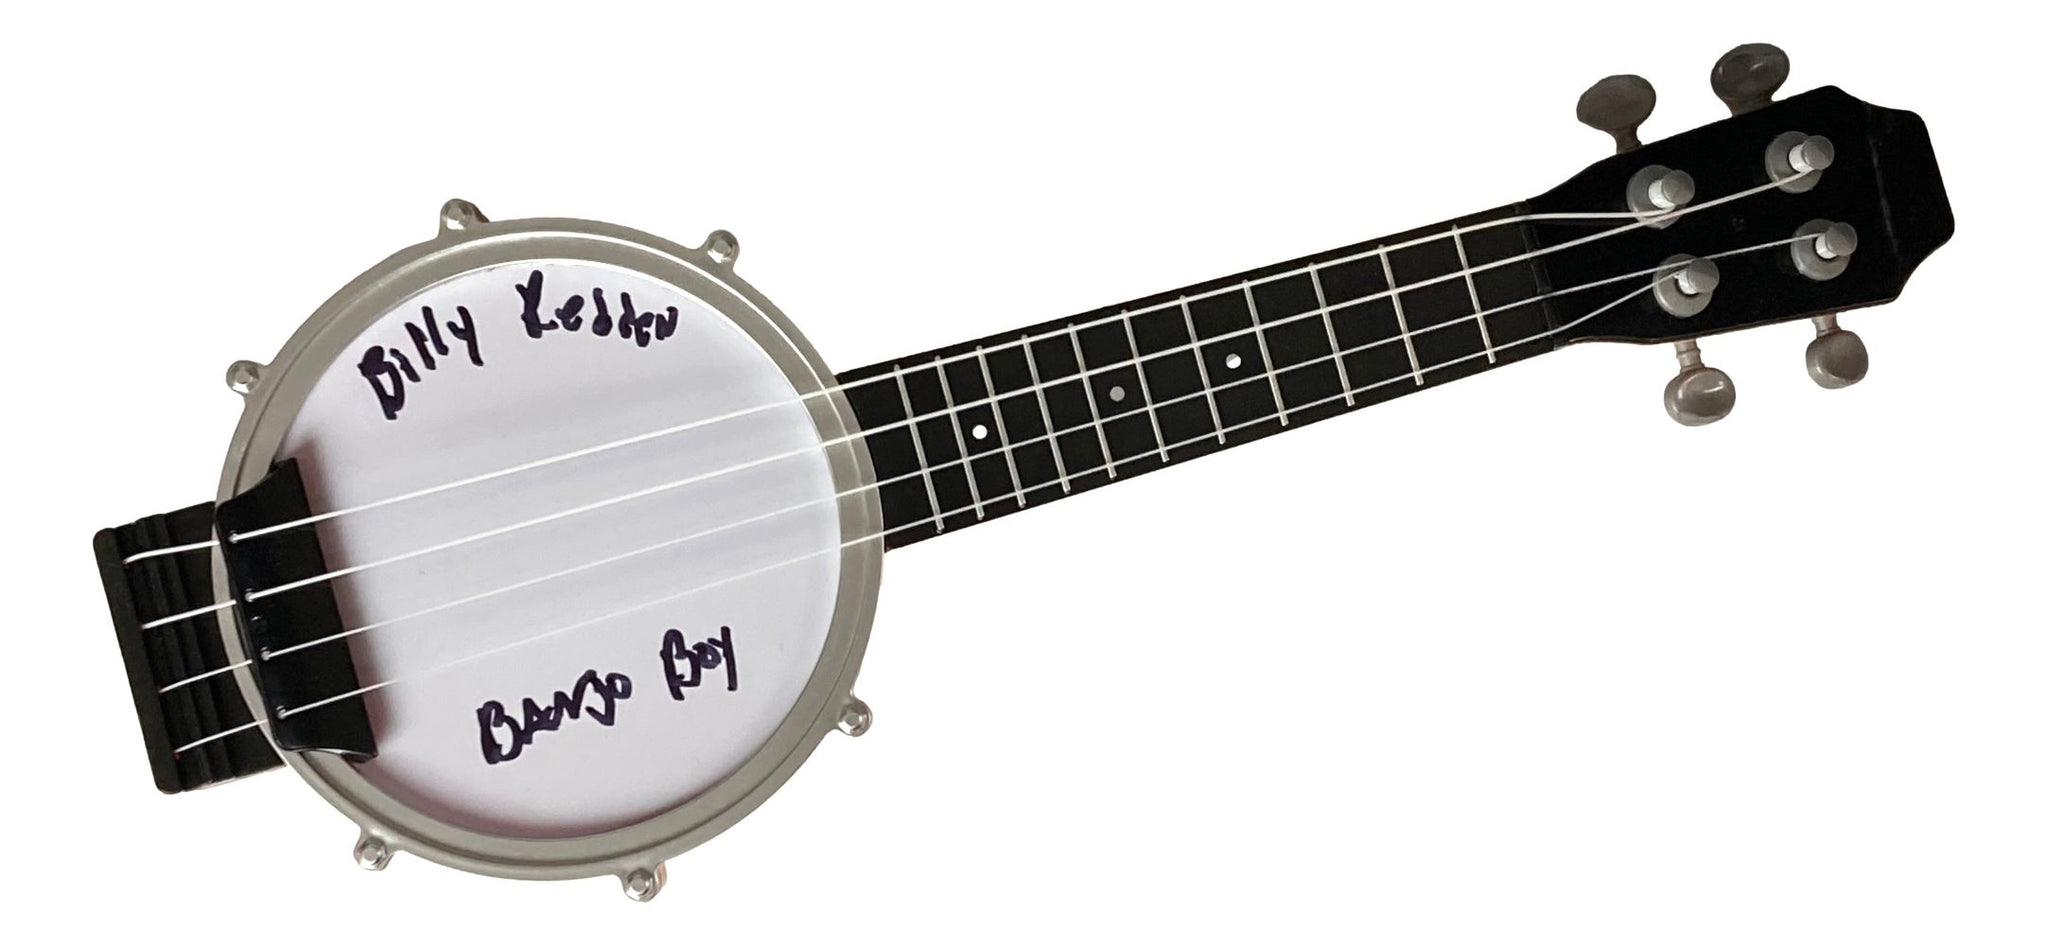 Billy Redden Signed Deliverance Mini Banjo Toy Banjo Boy Inscribed